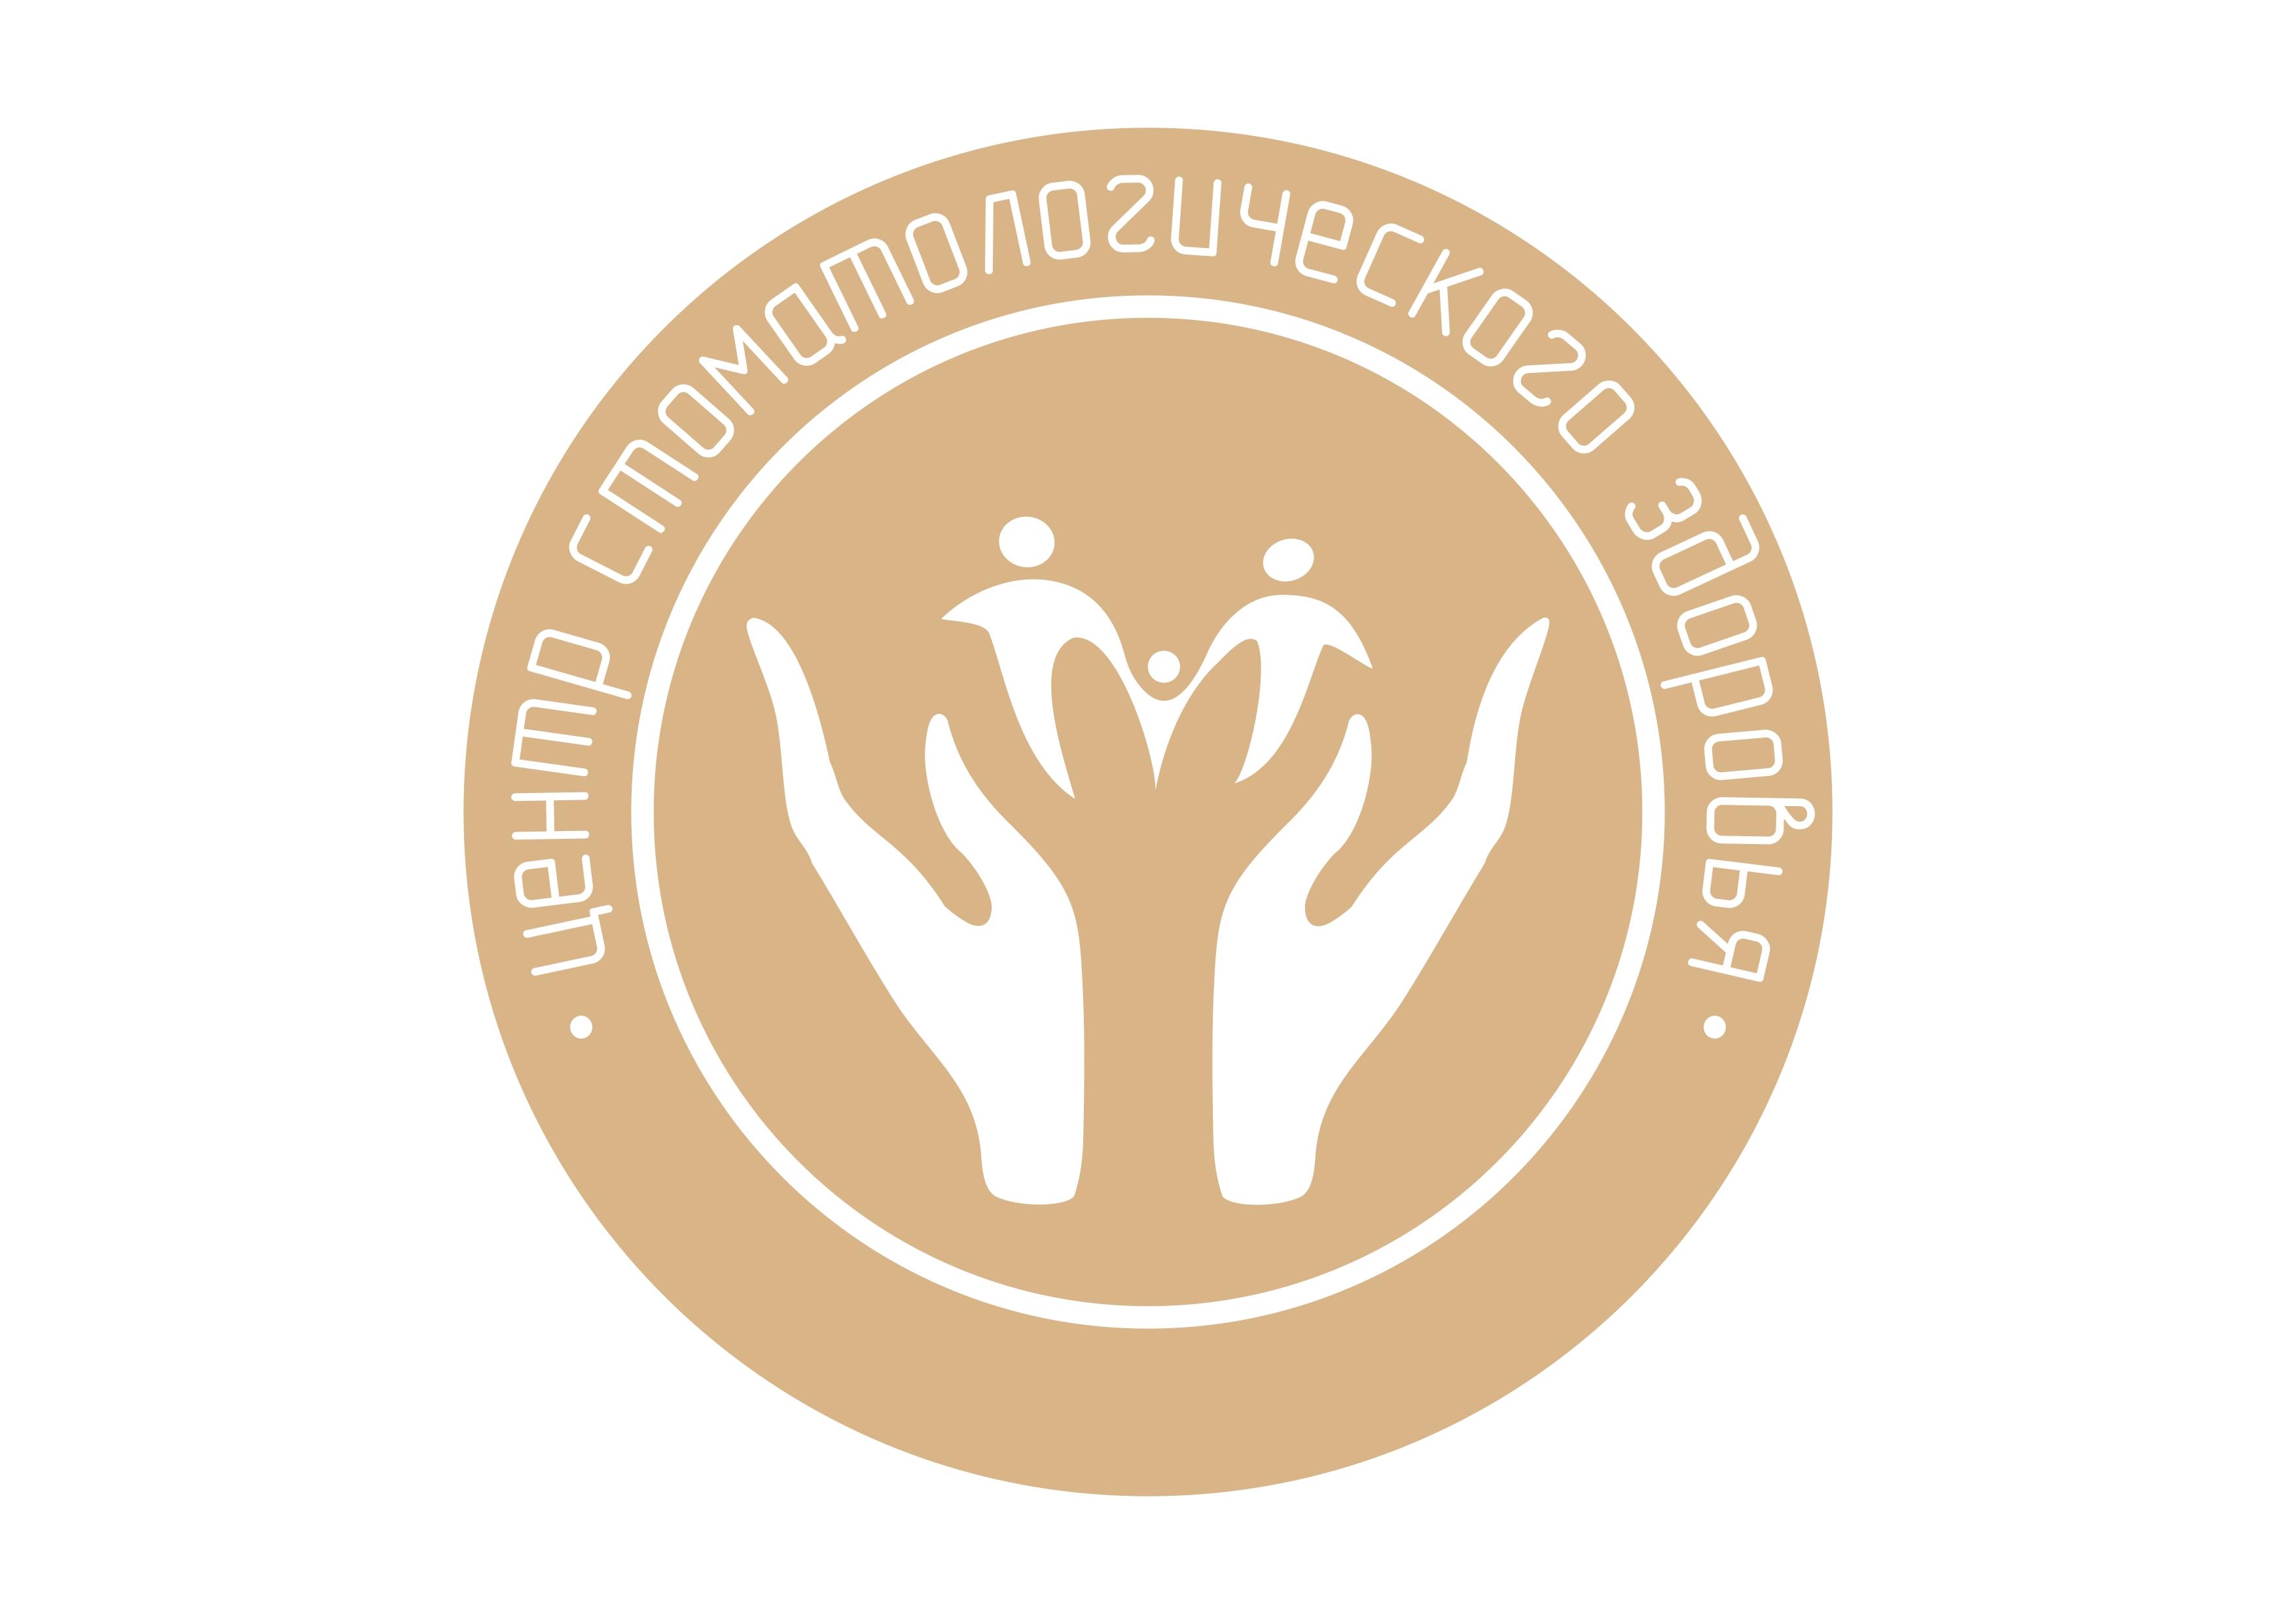 Центр стоматологического здоровья Барнаул. Здоровье Барнаул лого. Логотип стоматологической клиники.